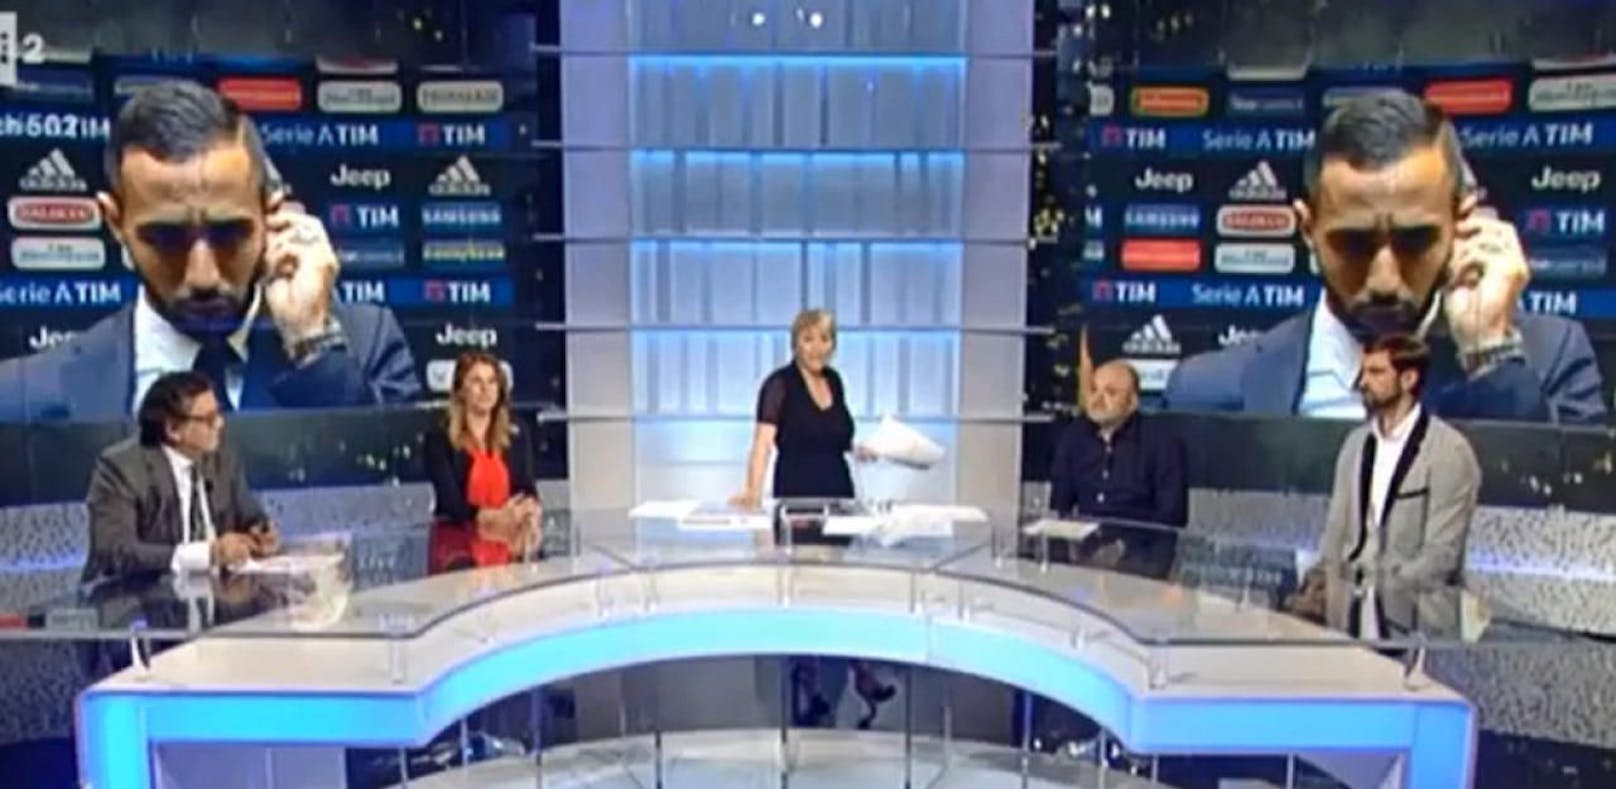 Eklat im italienischen Fernsehen: Juventus-Profi Benatia wird im Interview rassistisch beleidigt.